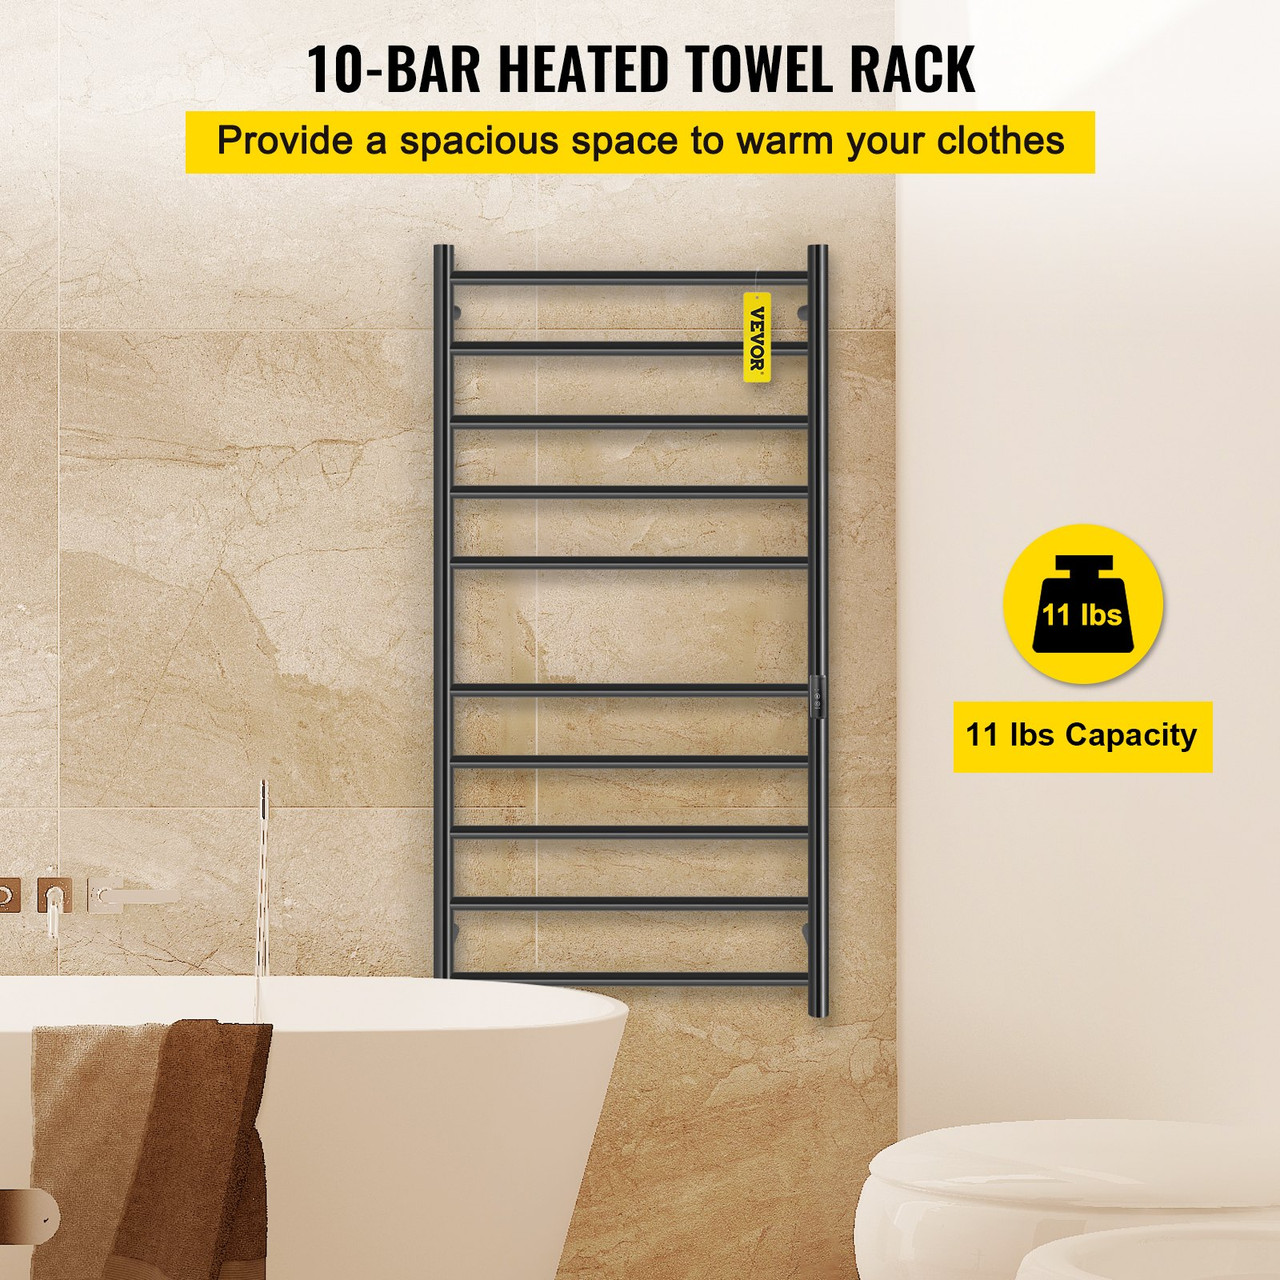 Heated Towel Rack, 10-Bar Towel Warmer Rack, Wall Mounted Electric Towel Warmer, Electric Towel Drying Rack w/Timer, Matte Black Stainless Steel